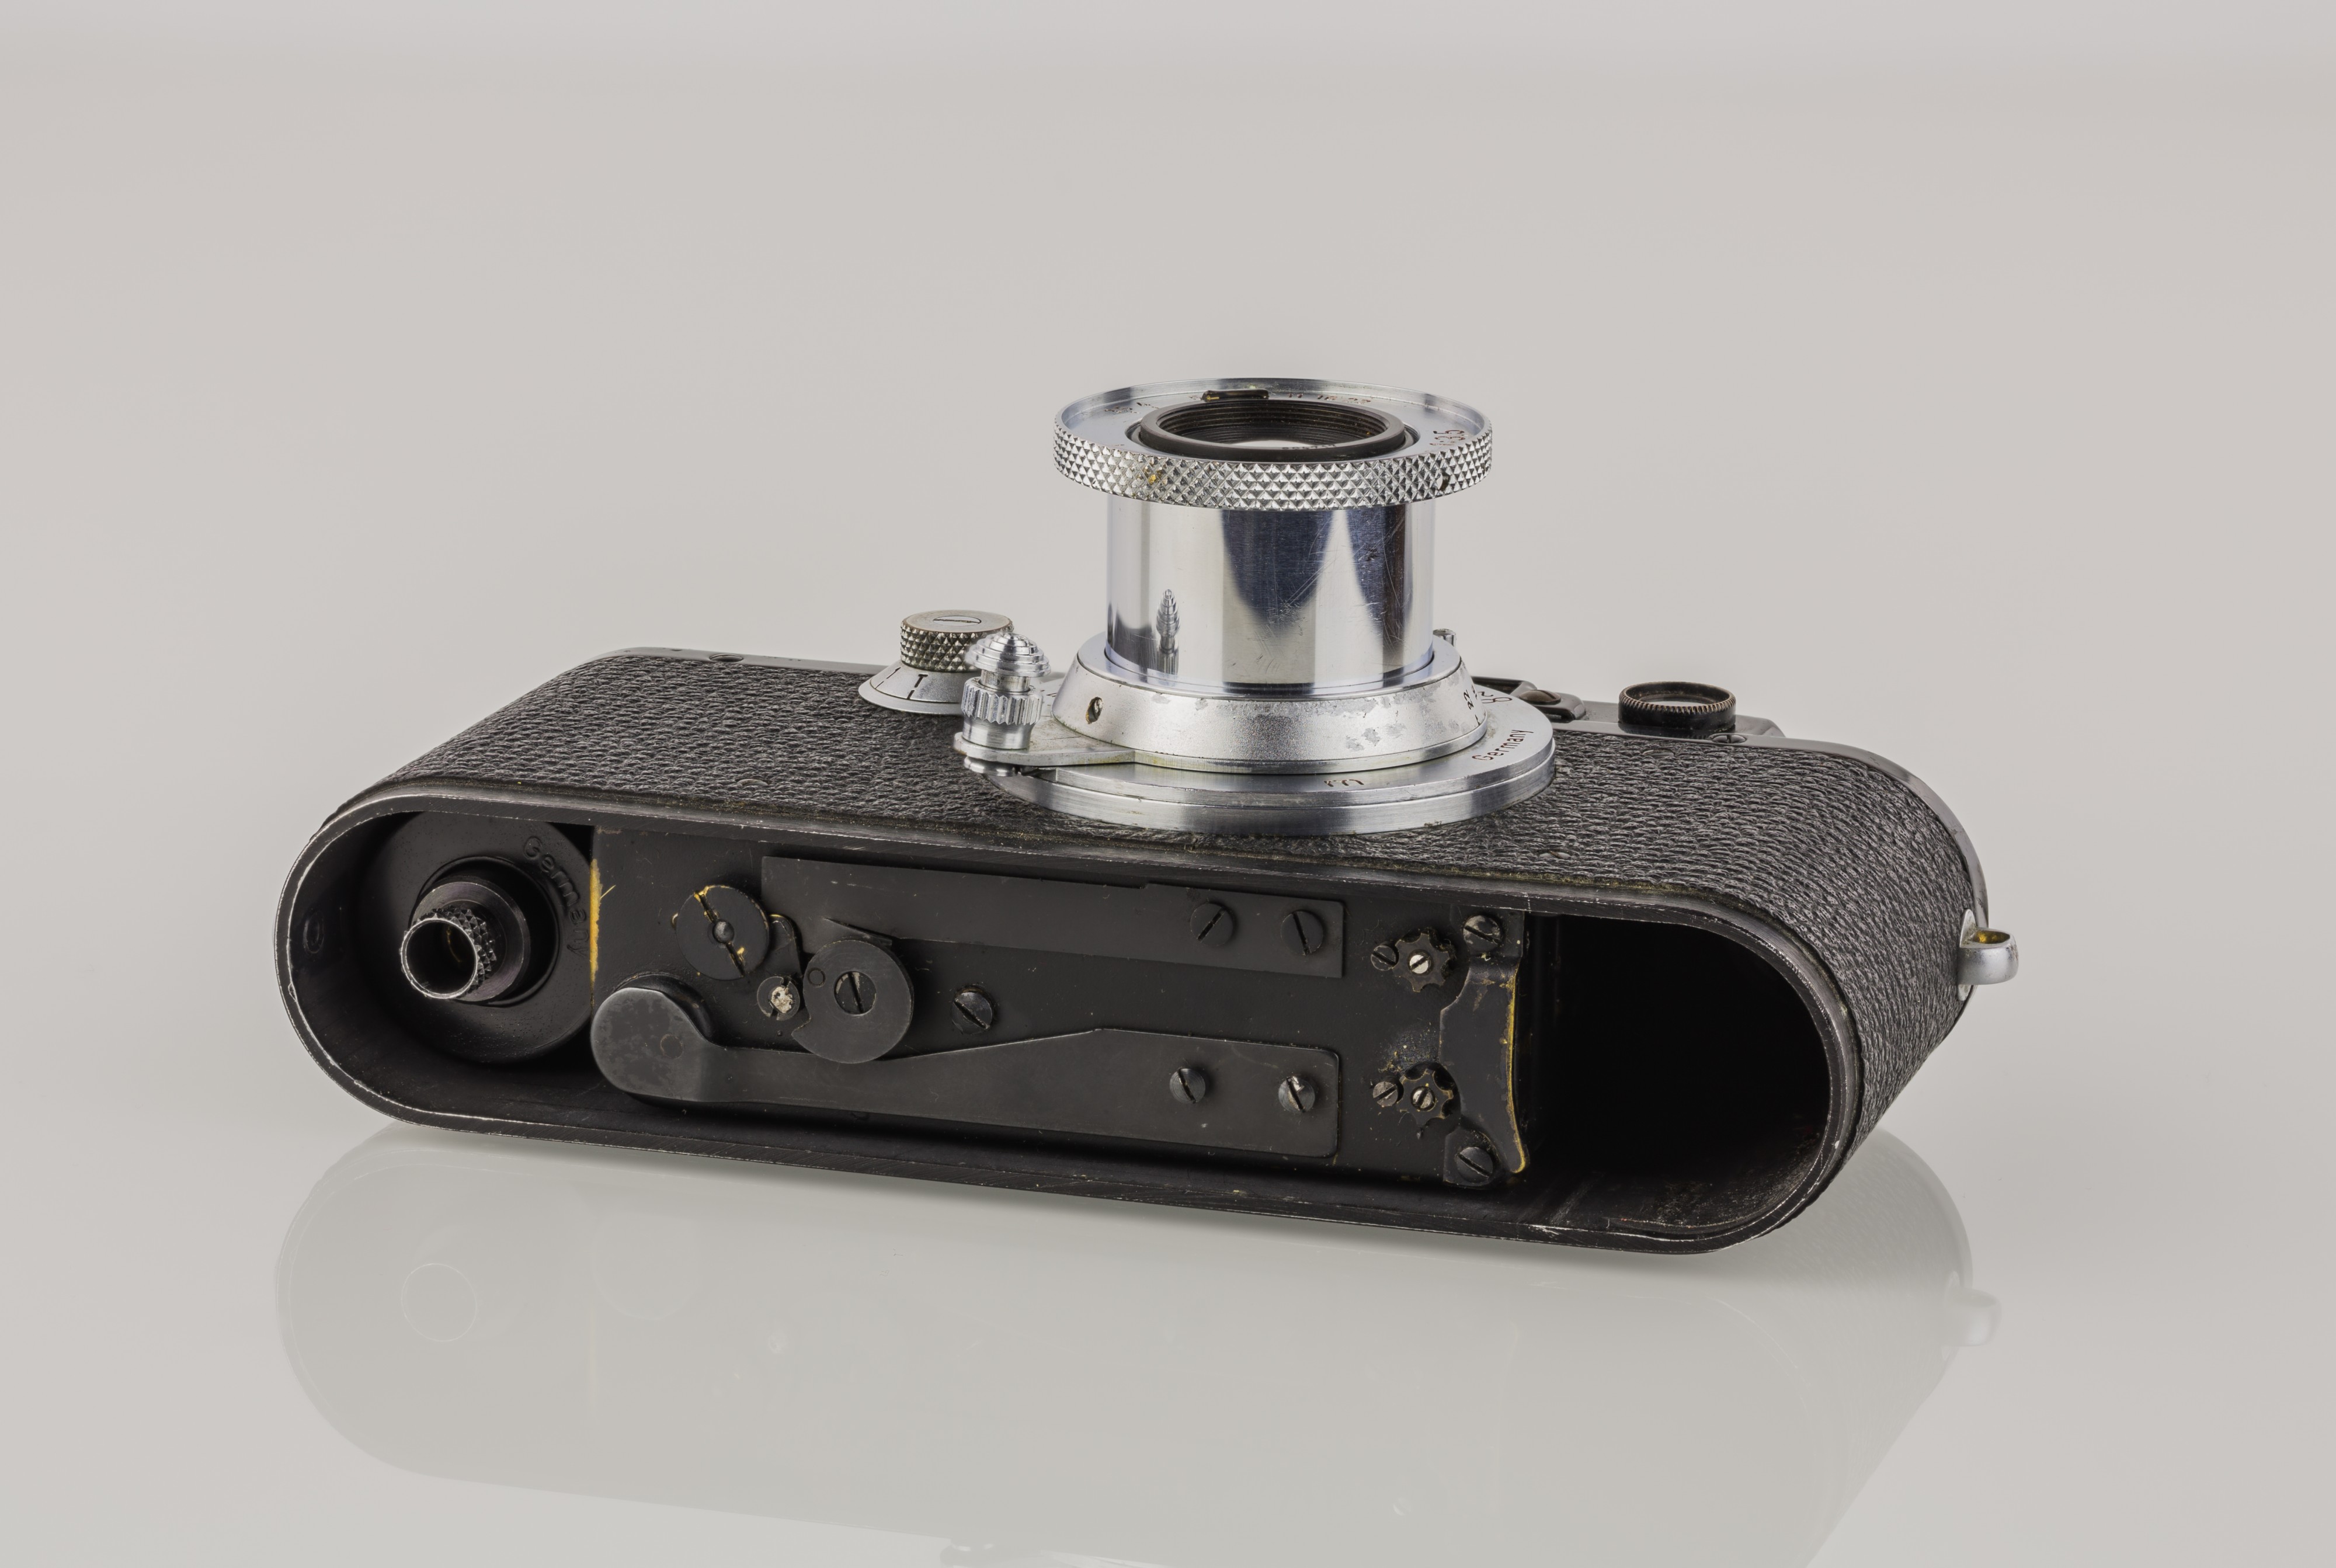 LEI0221 199 Leica III schwarz Umbau von Leica I - Sn. 25629 1930-M39 Bottom view mit offener Bodenplatte-6426 hf